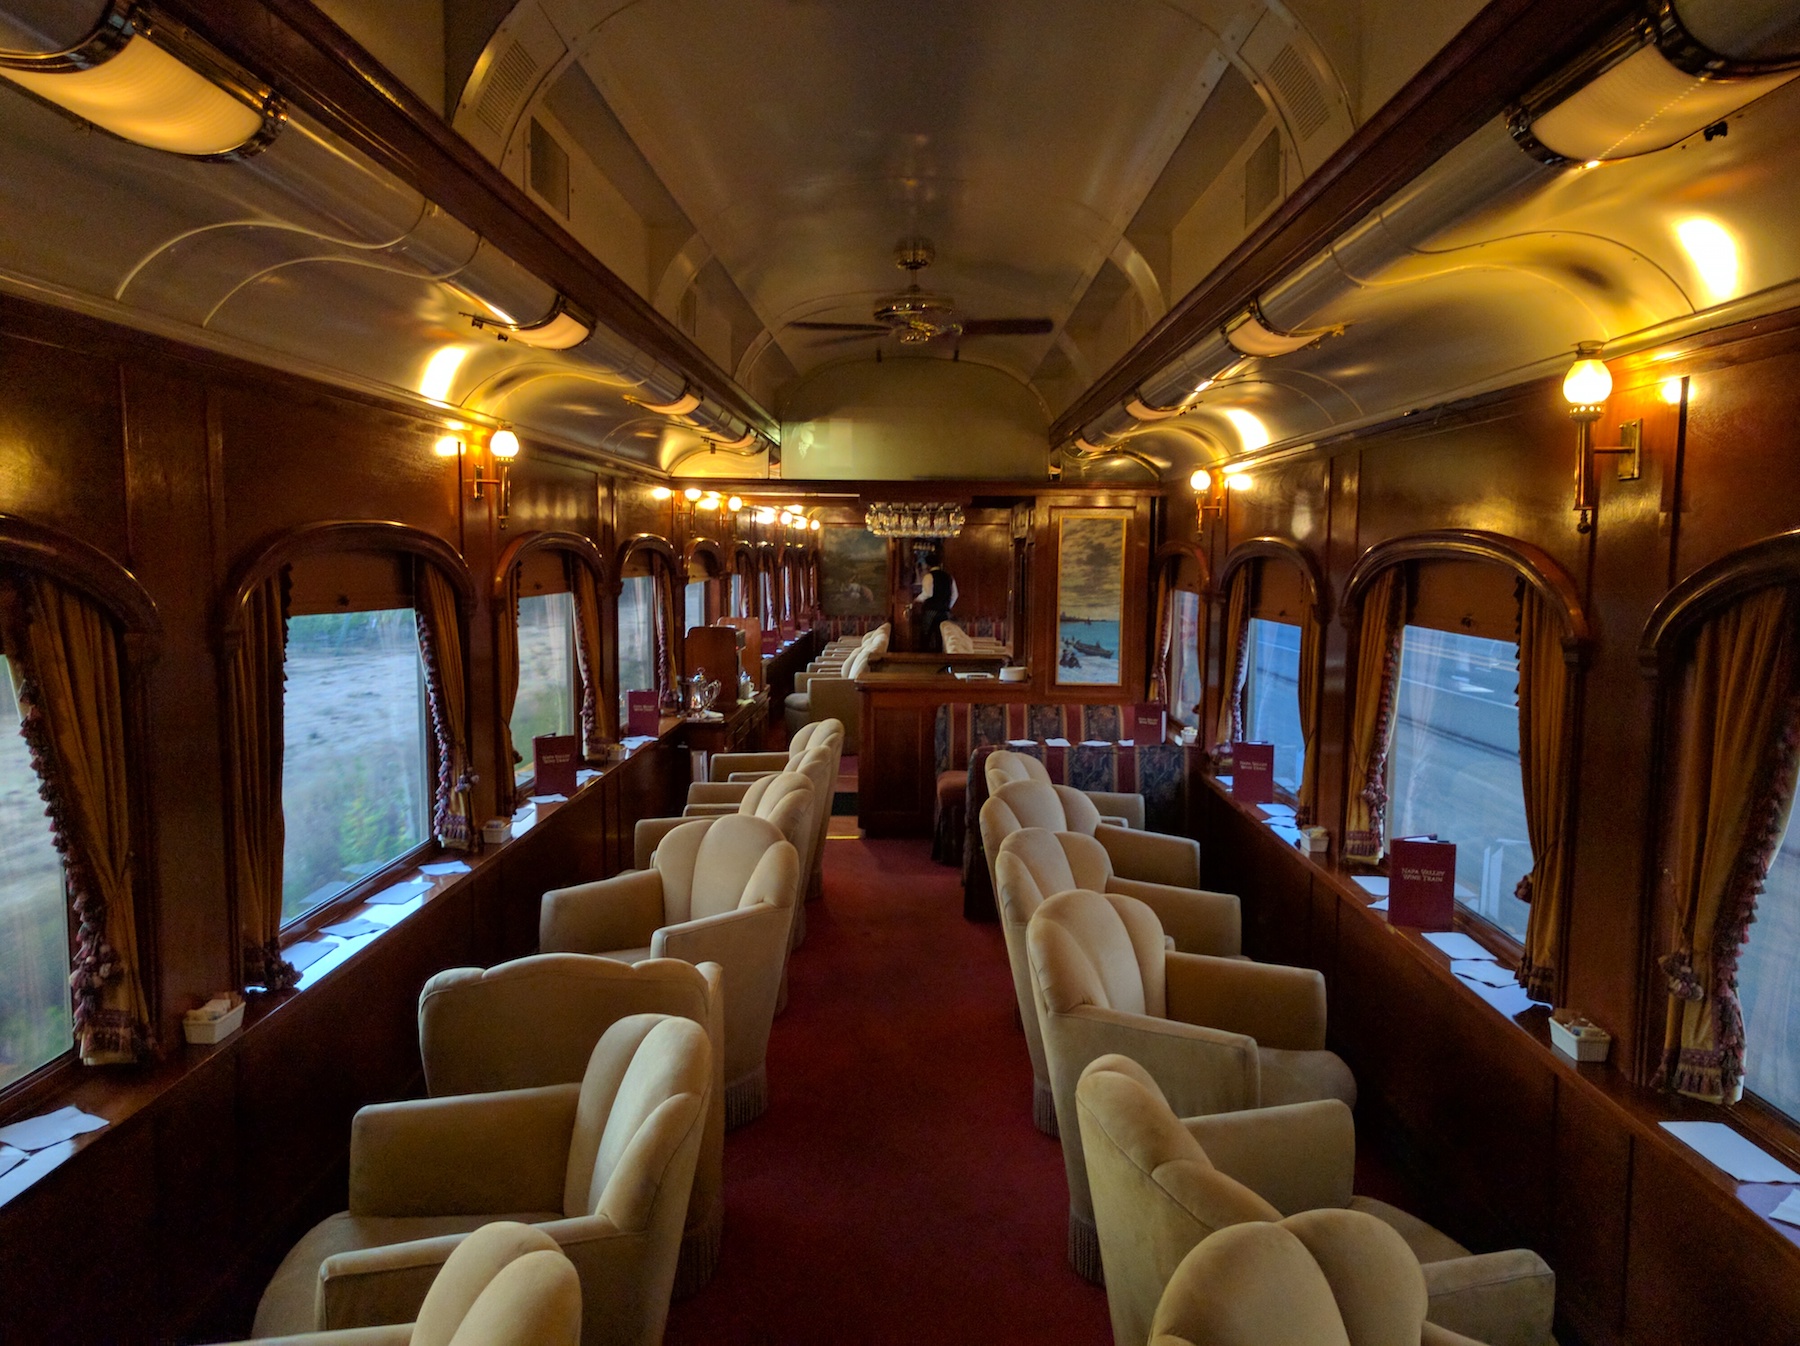 All Aboard The Napa Valley Wine Train!